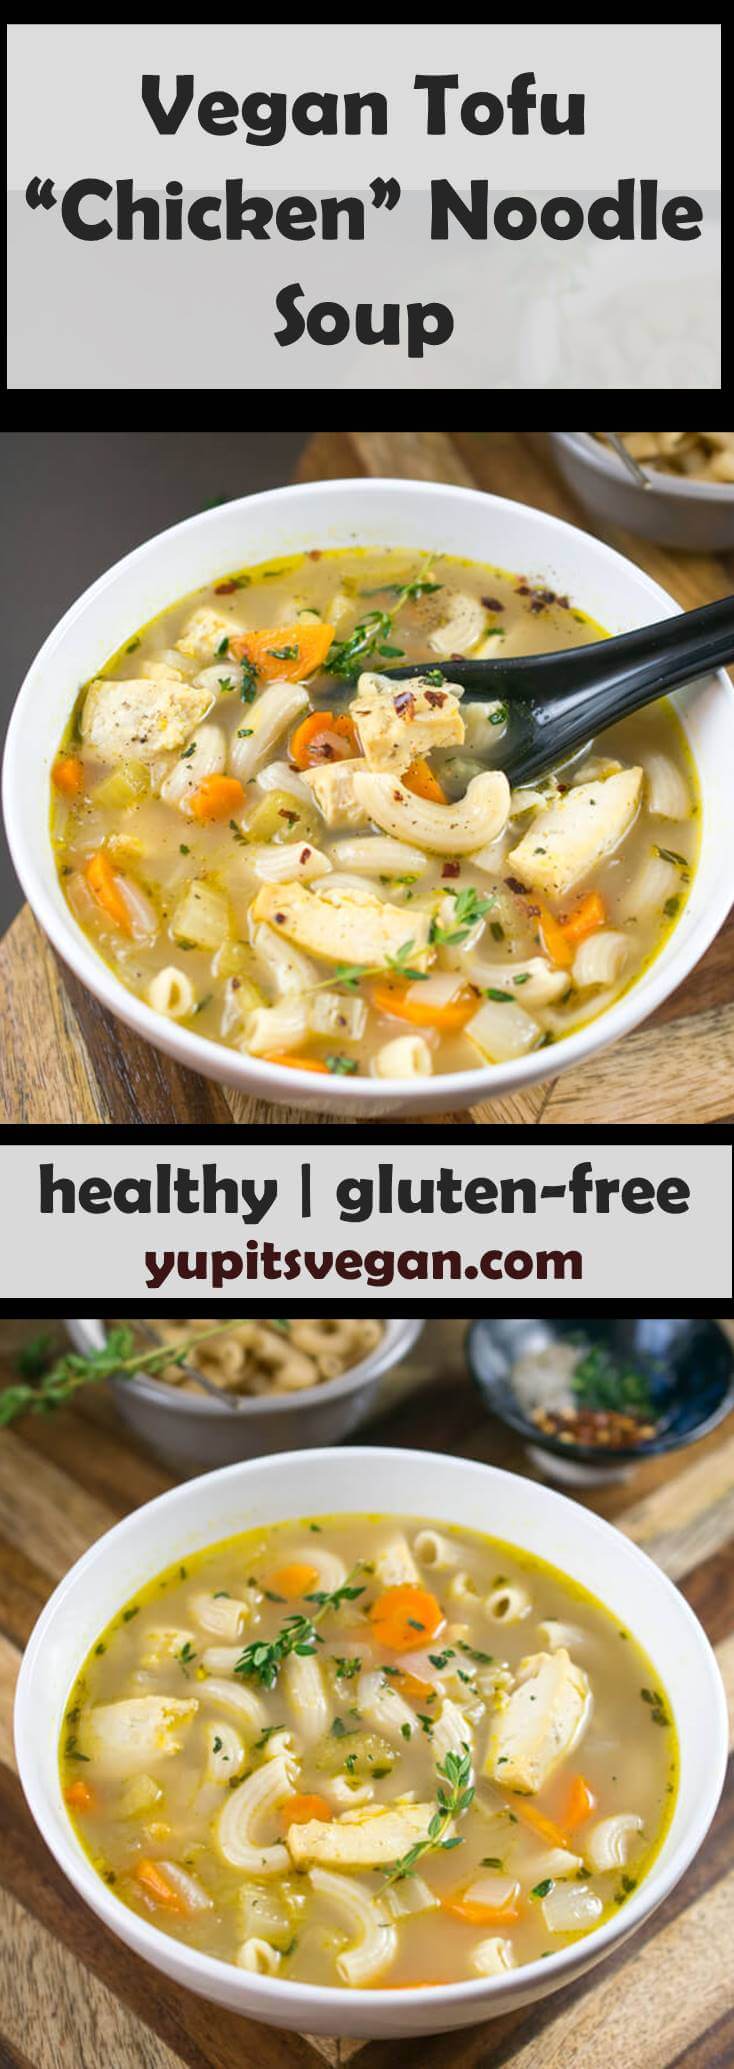 Tofu Noodle Soup Recipe (Vegan Chicken Noodle Soup)